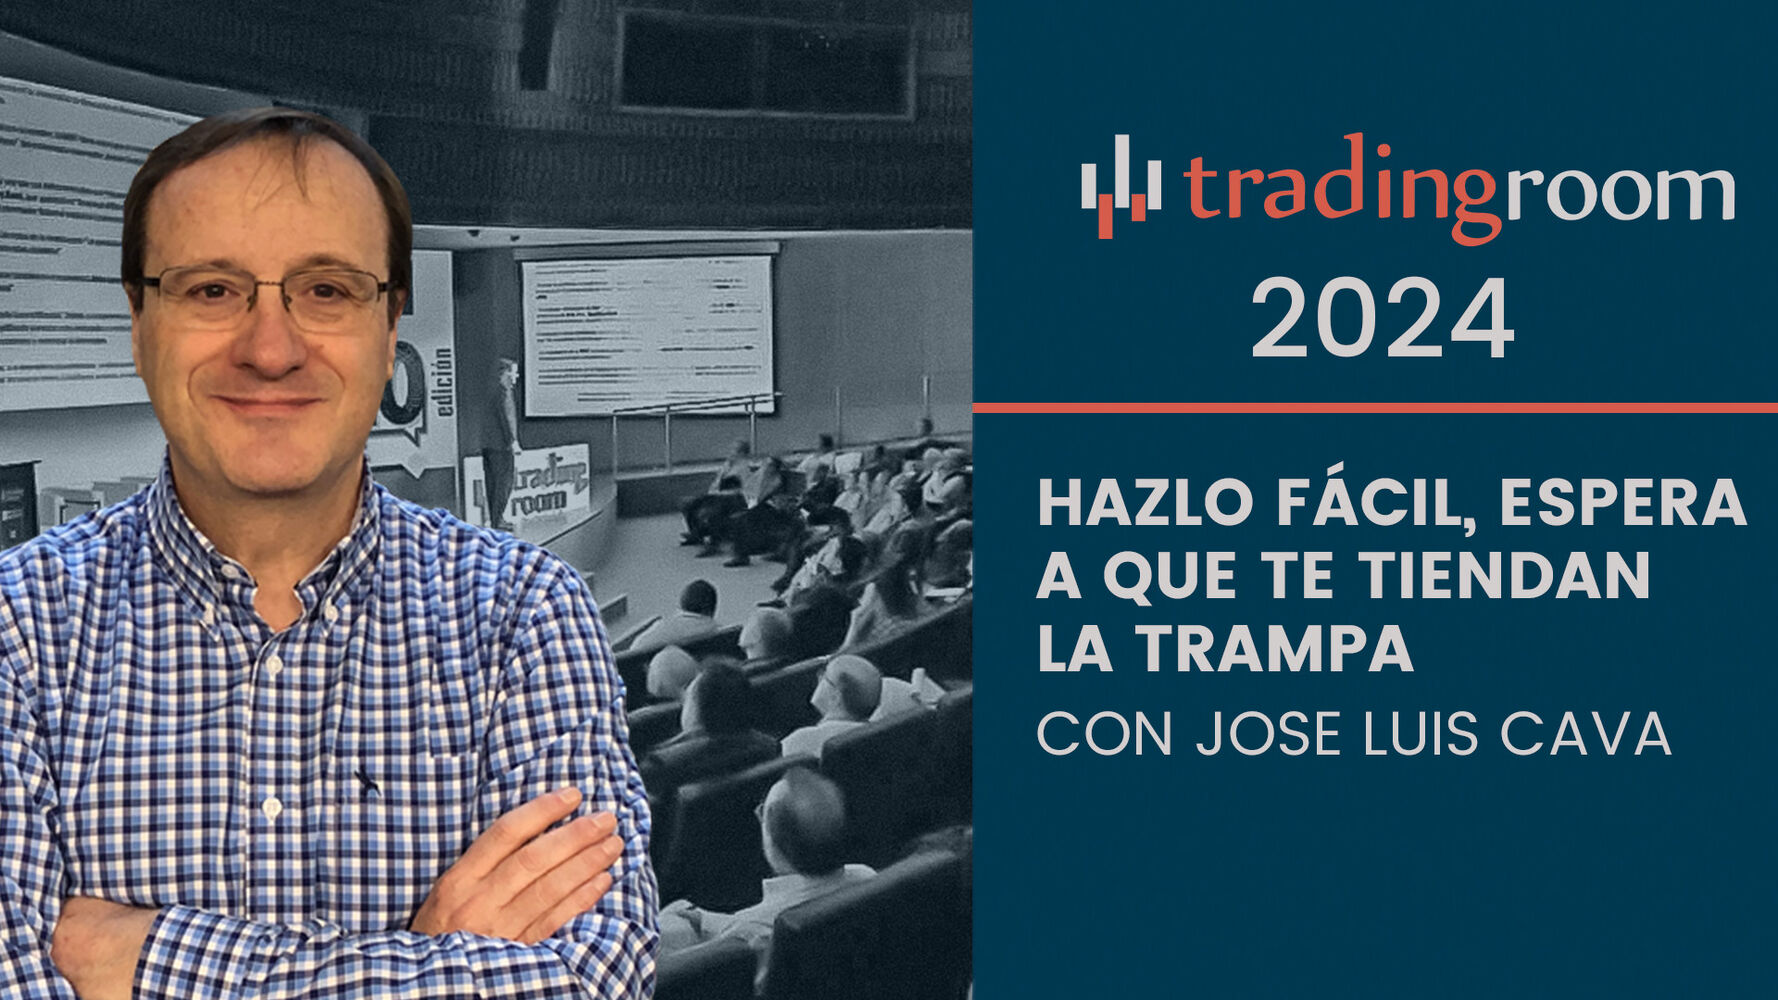 José Luis Cava estará en el Trading Room - Madrid